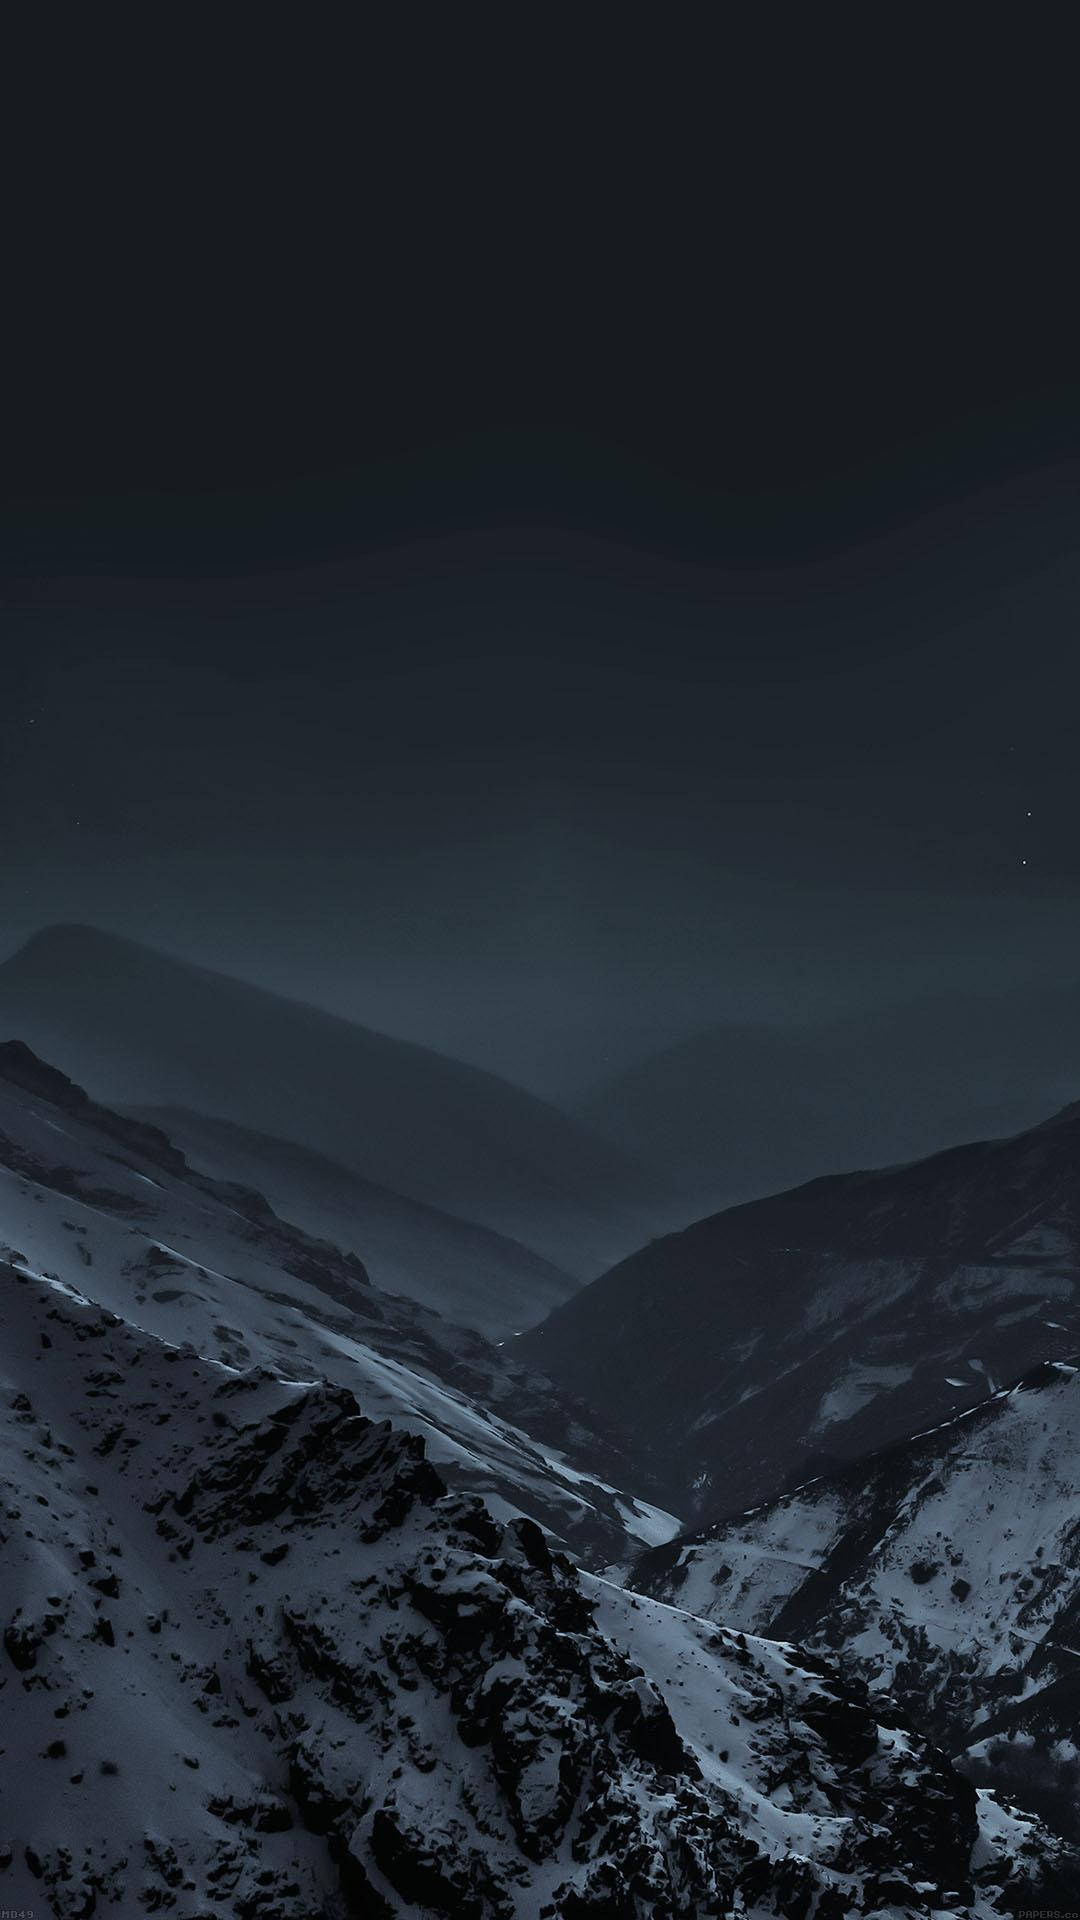 En fredfyldt nat omgivet af bjerglandskaber. Wallpaper